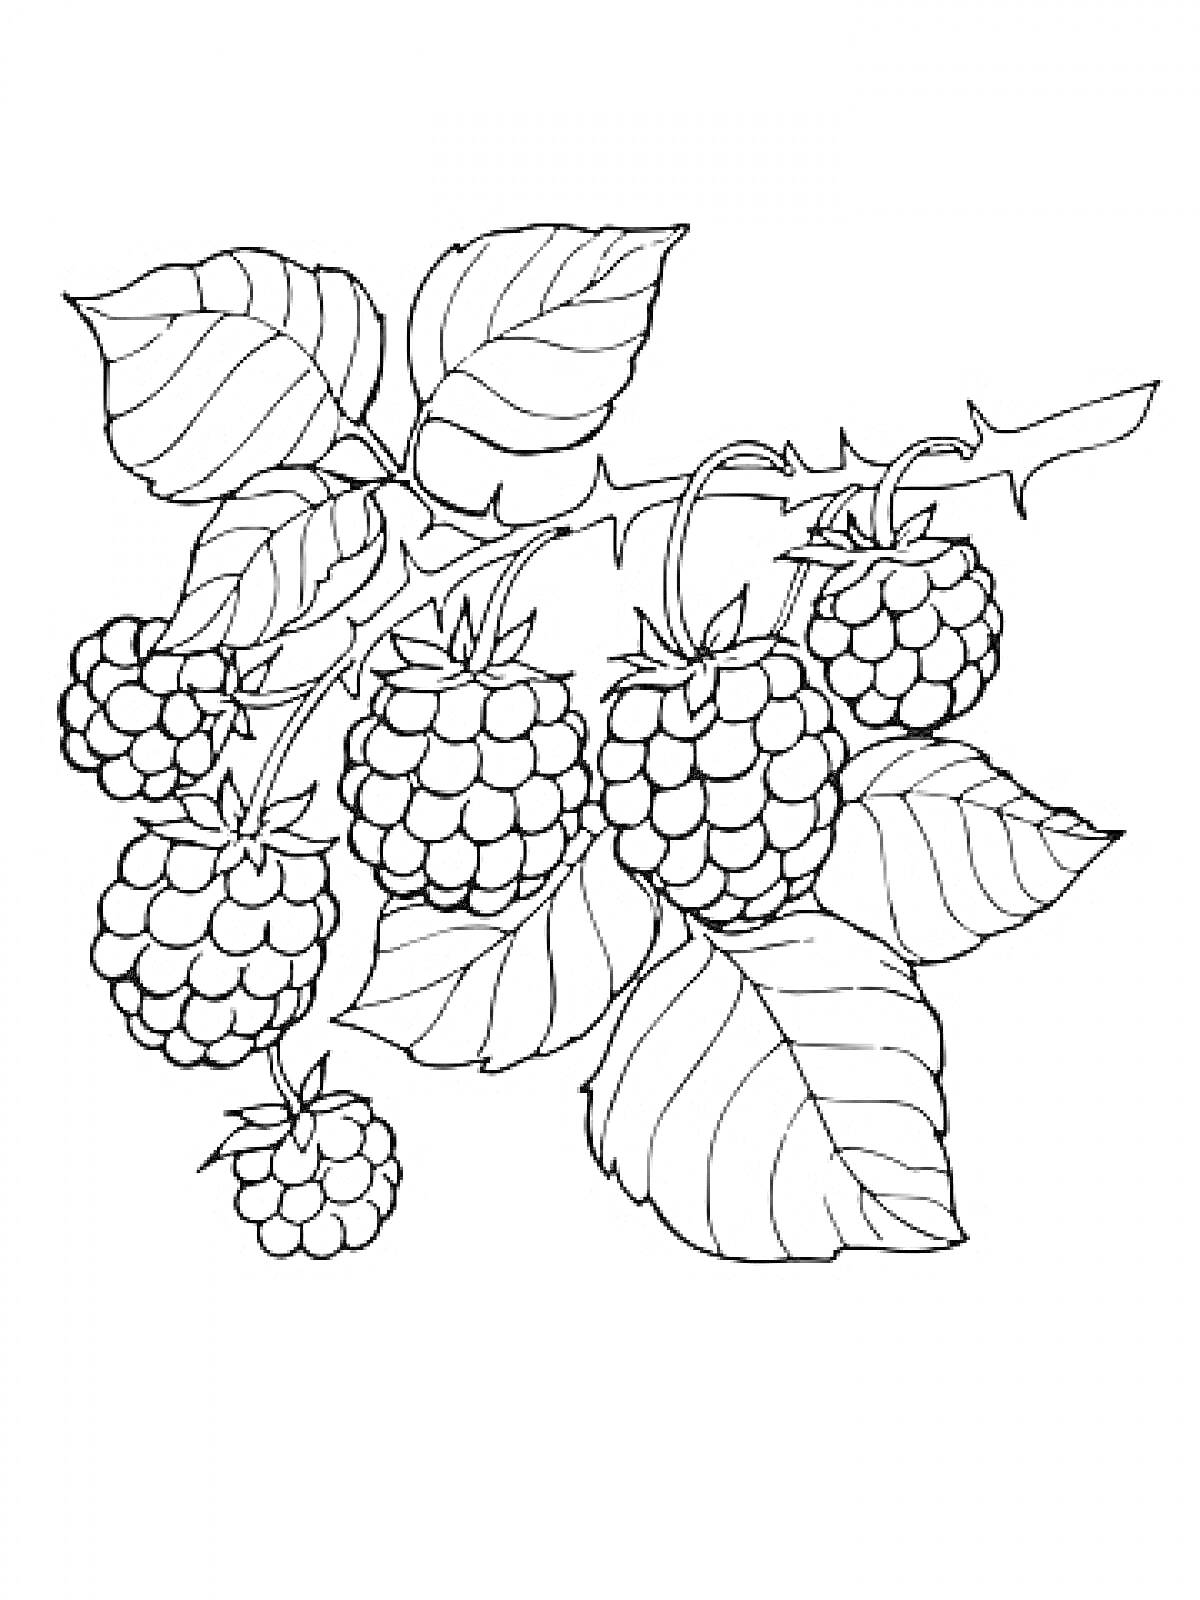 Веточка малины с ягодами и листьями